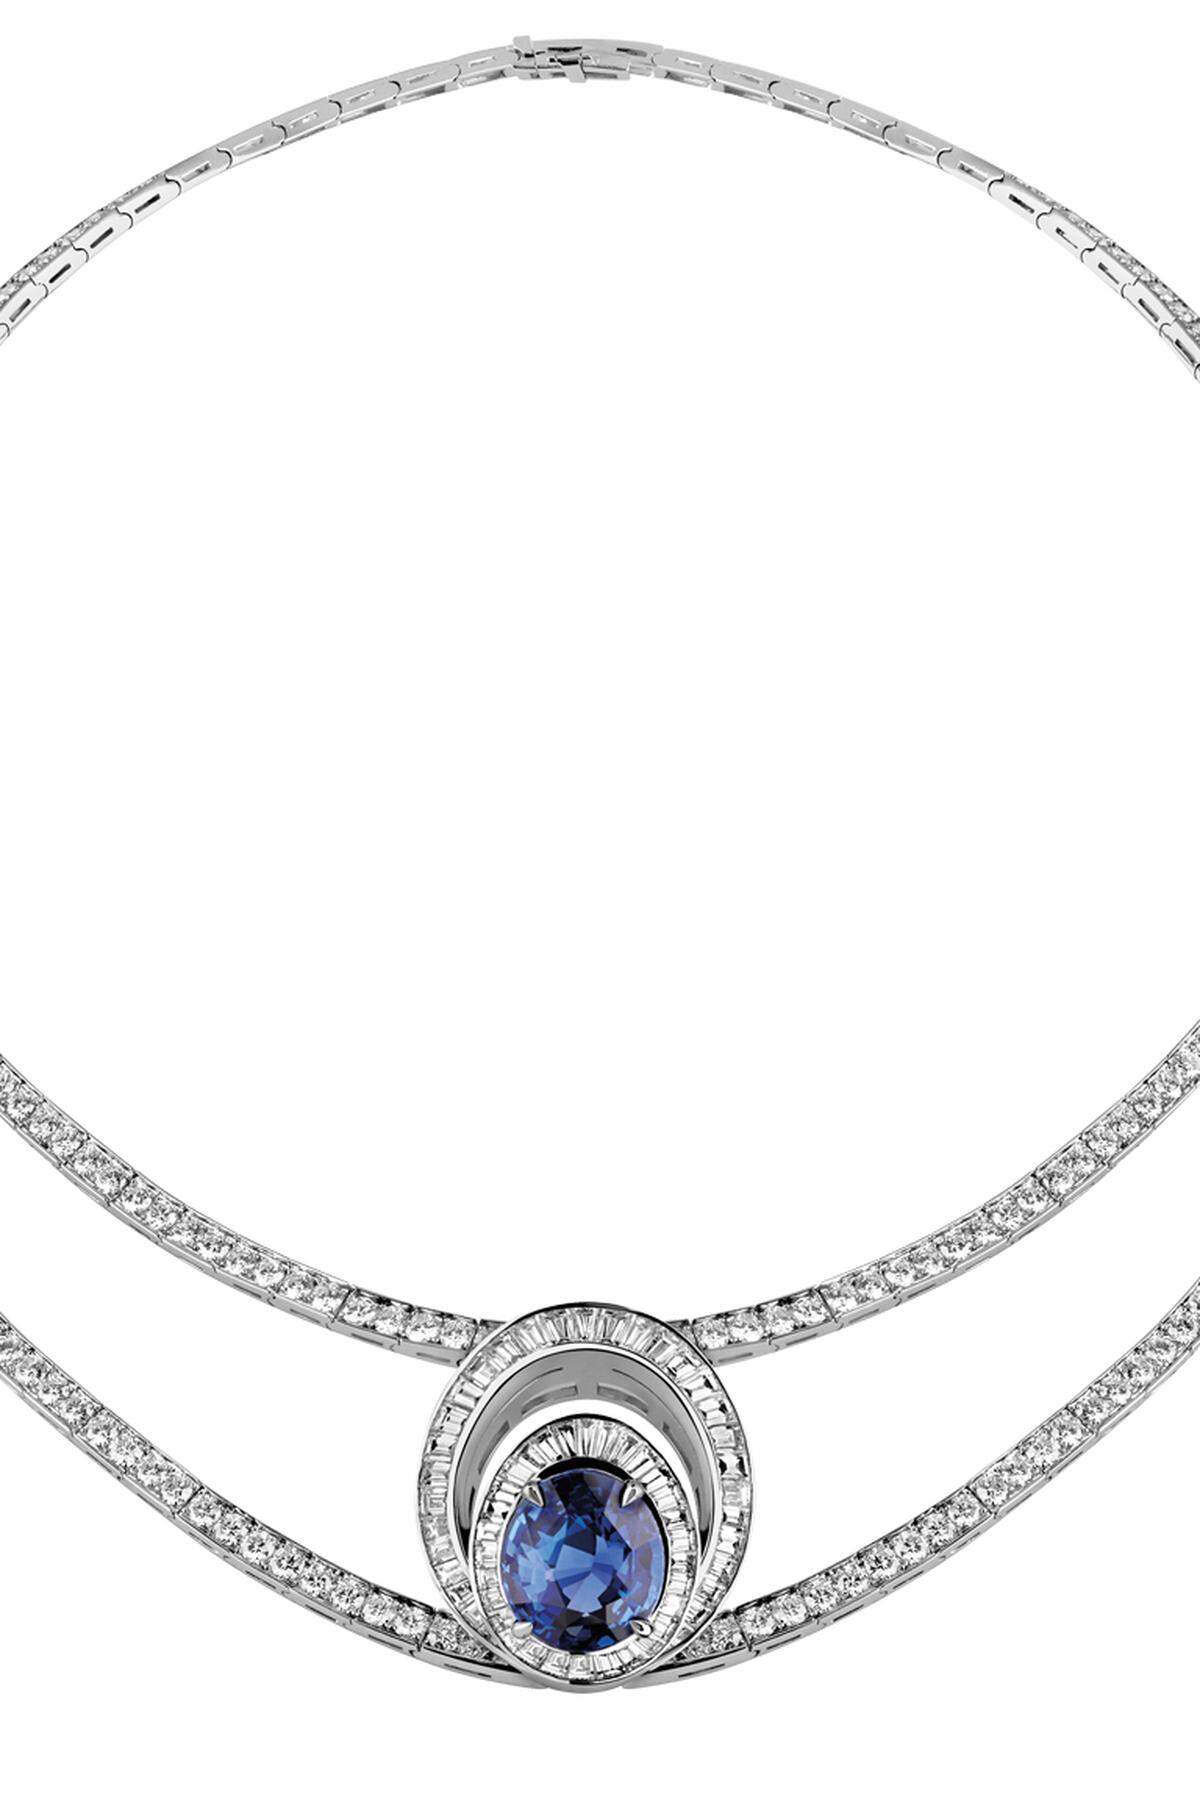 „Reine de Naples“ aus Platin 950, mit Brillanten, 16,71 ct., Diamanten im Baguetteschliff, 6,17 ct., und einem ovalen blauen Saphir, 9,41 ct.